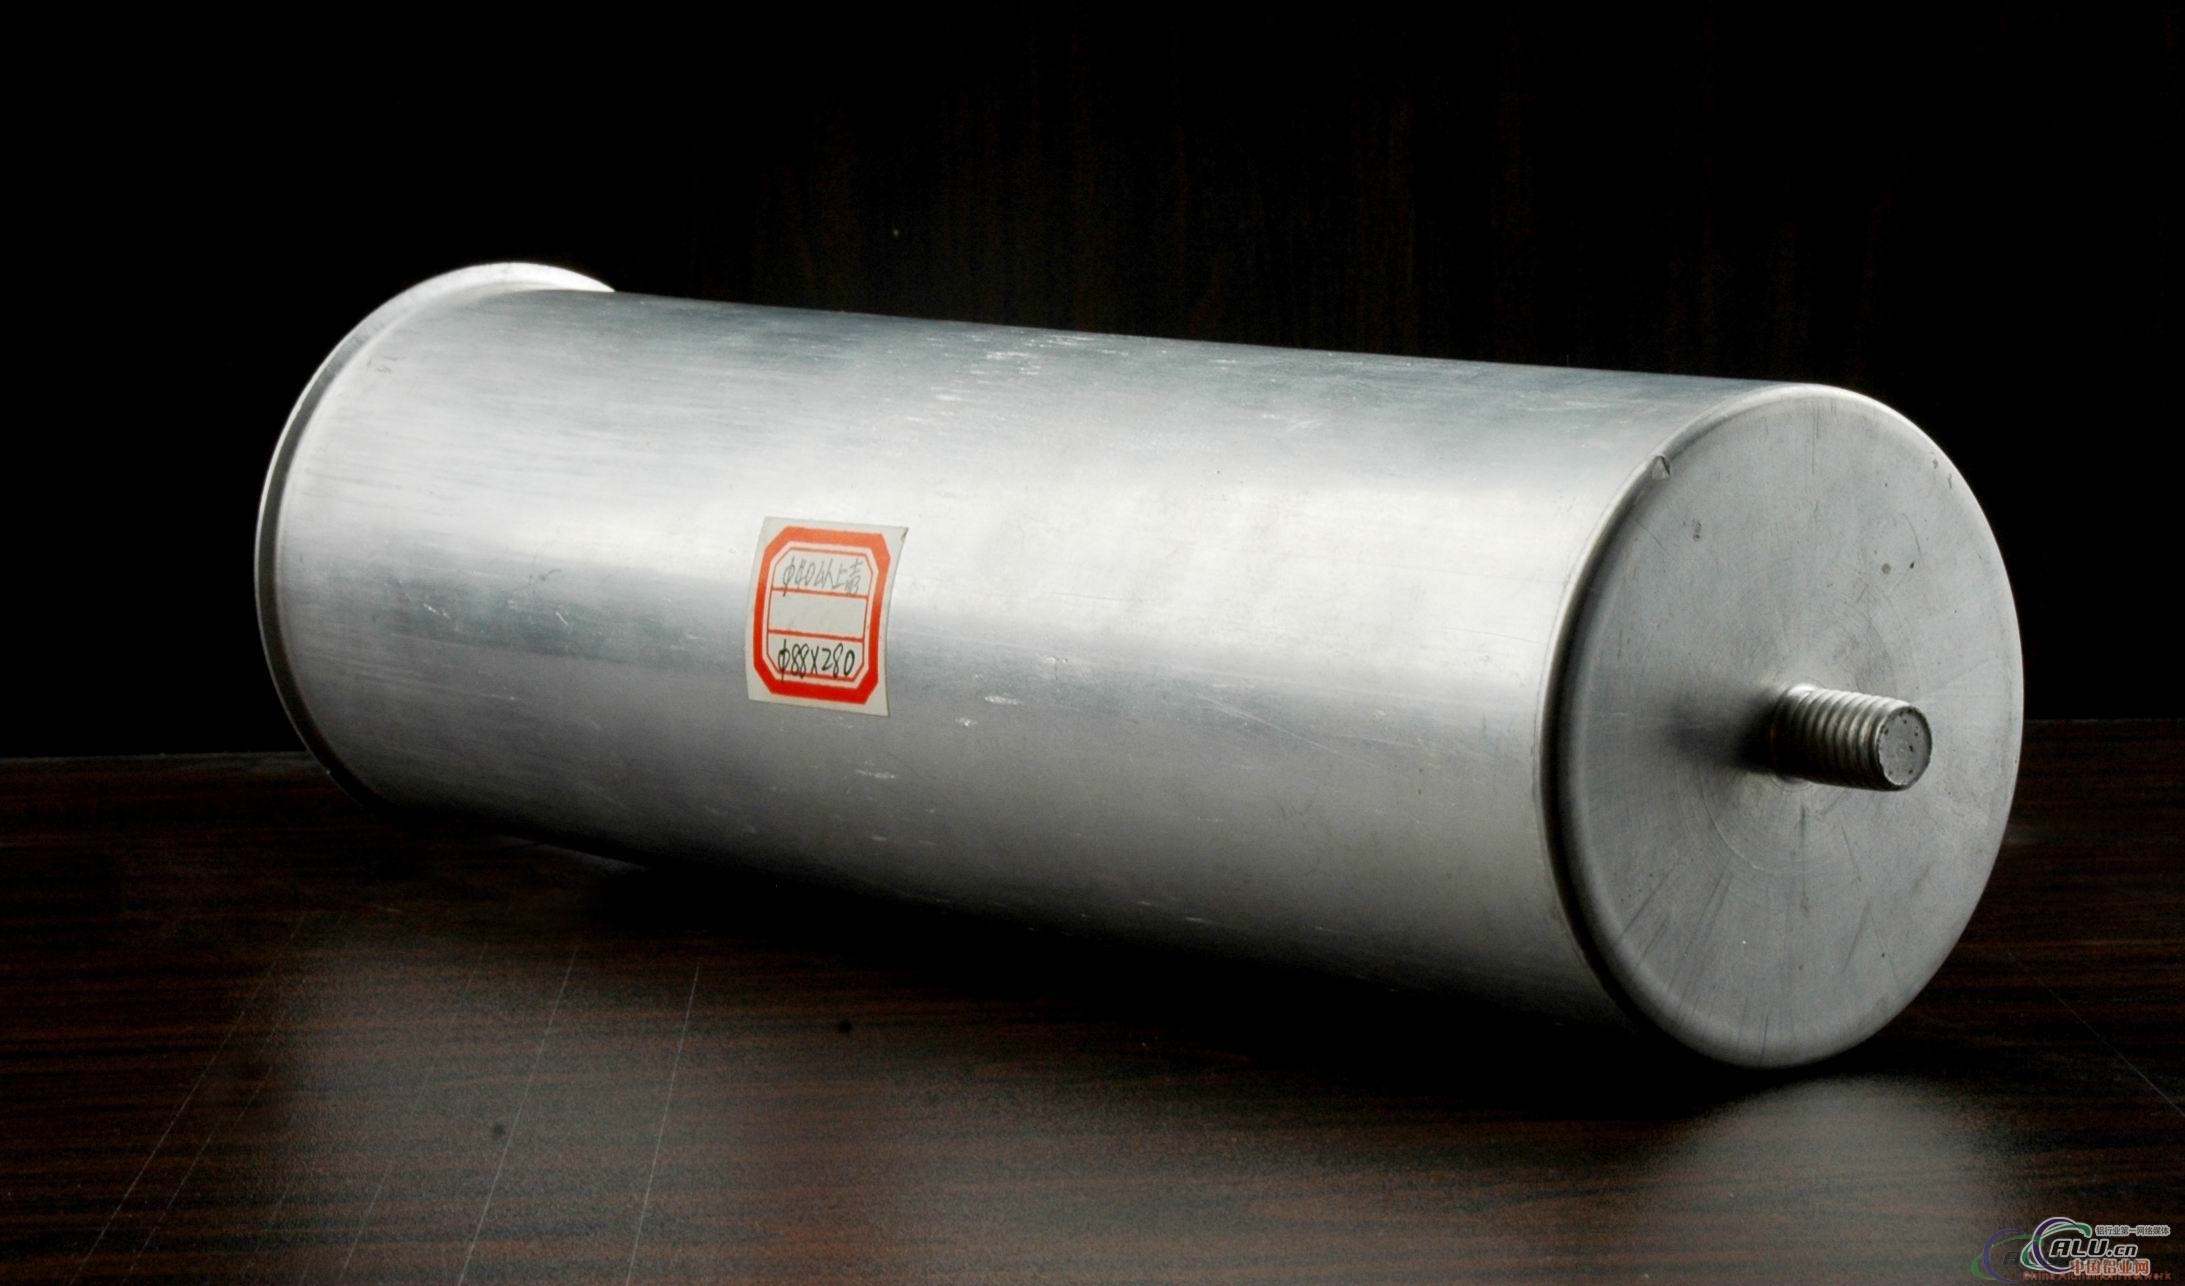 aluminium case(circular case with thread)